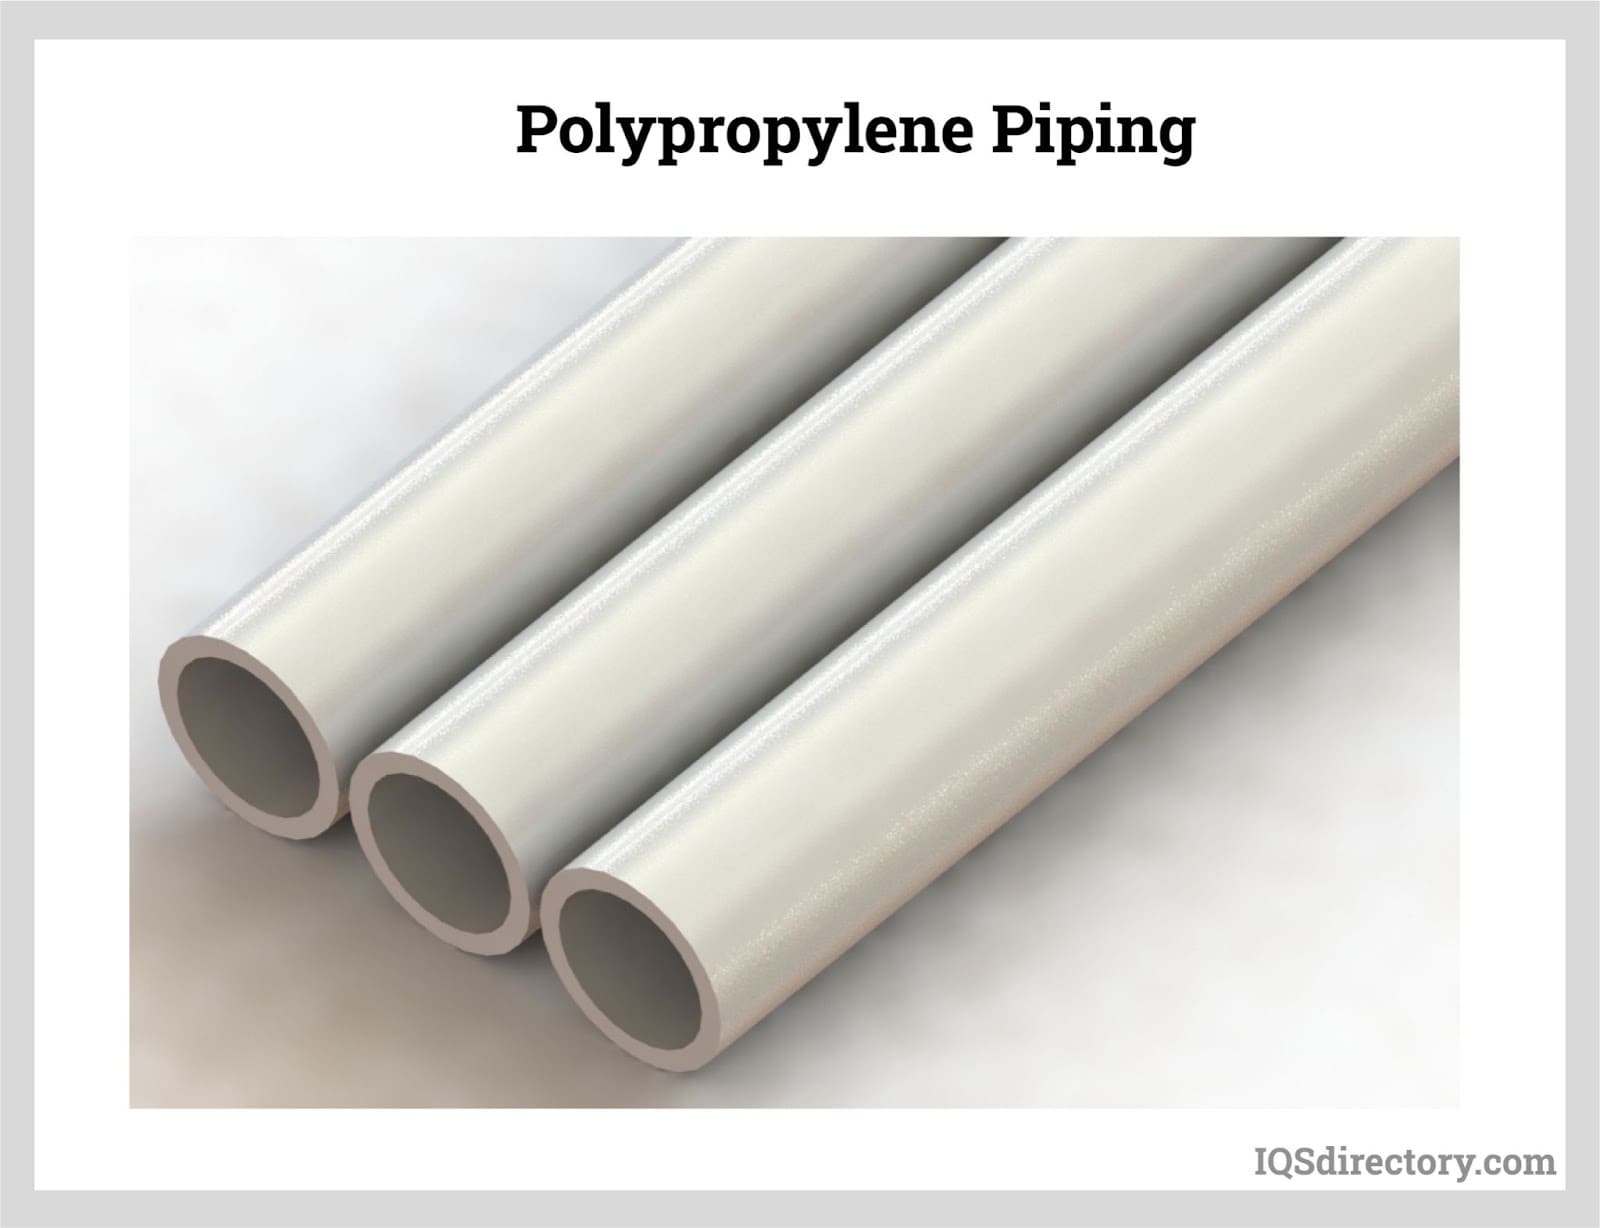 Polypropylene Piping